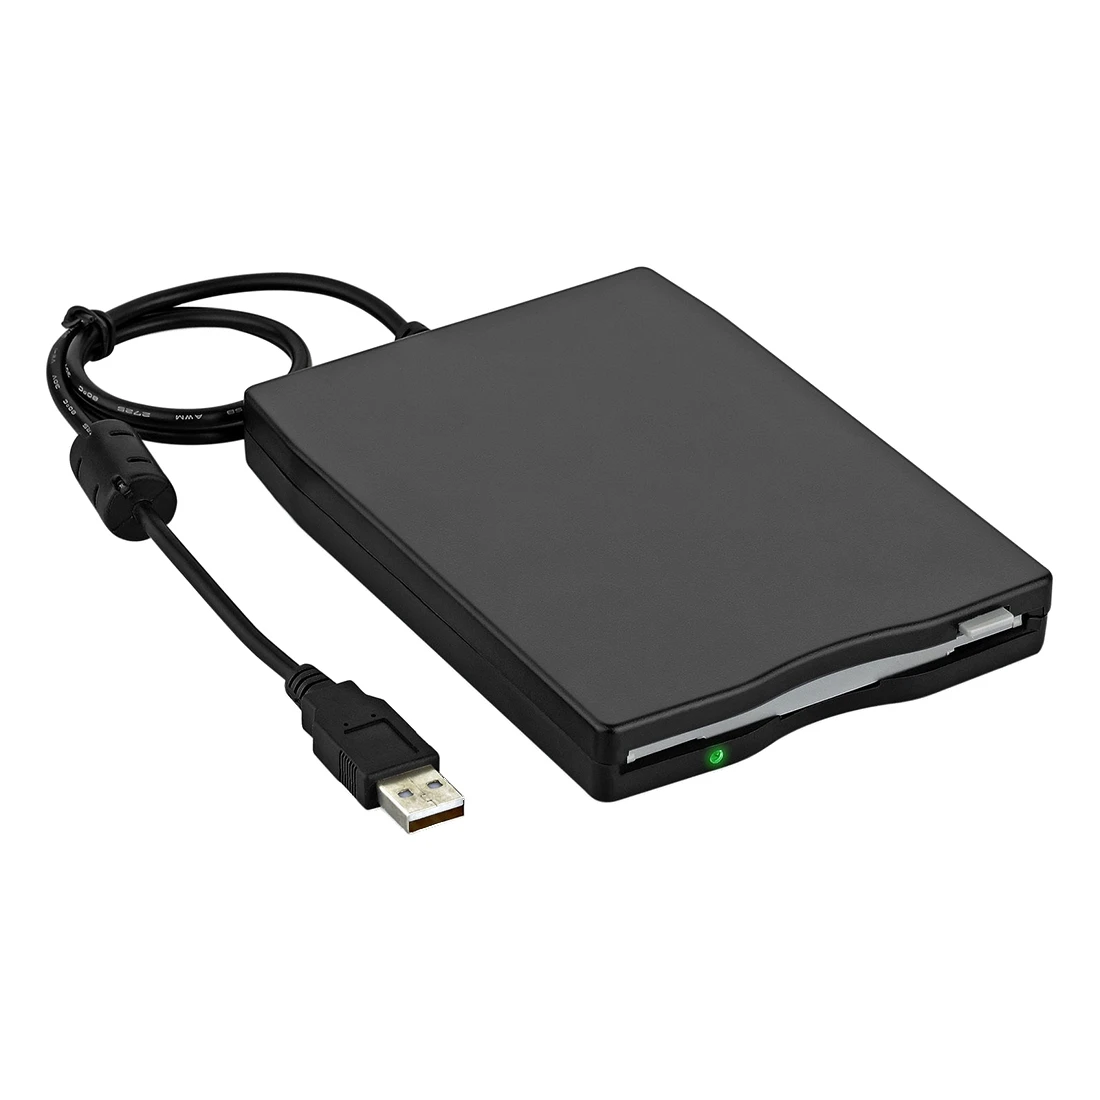 YOC-3." USB внешний портативный дисковод гибких дисков 1,44 МБ для хранения данных для ПК и ноутбуков